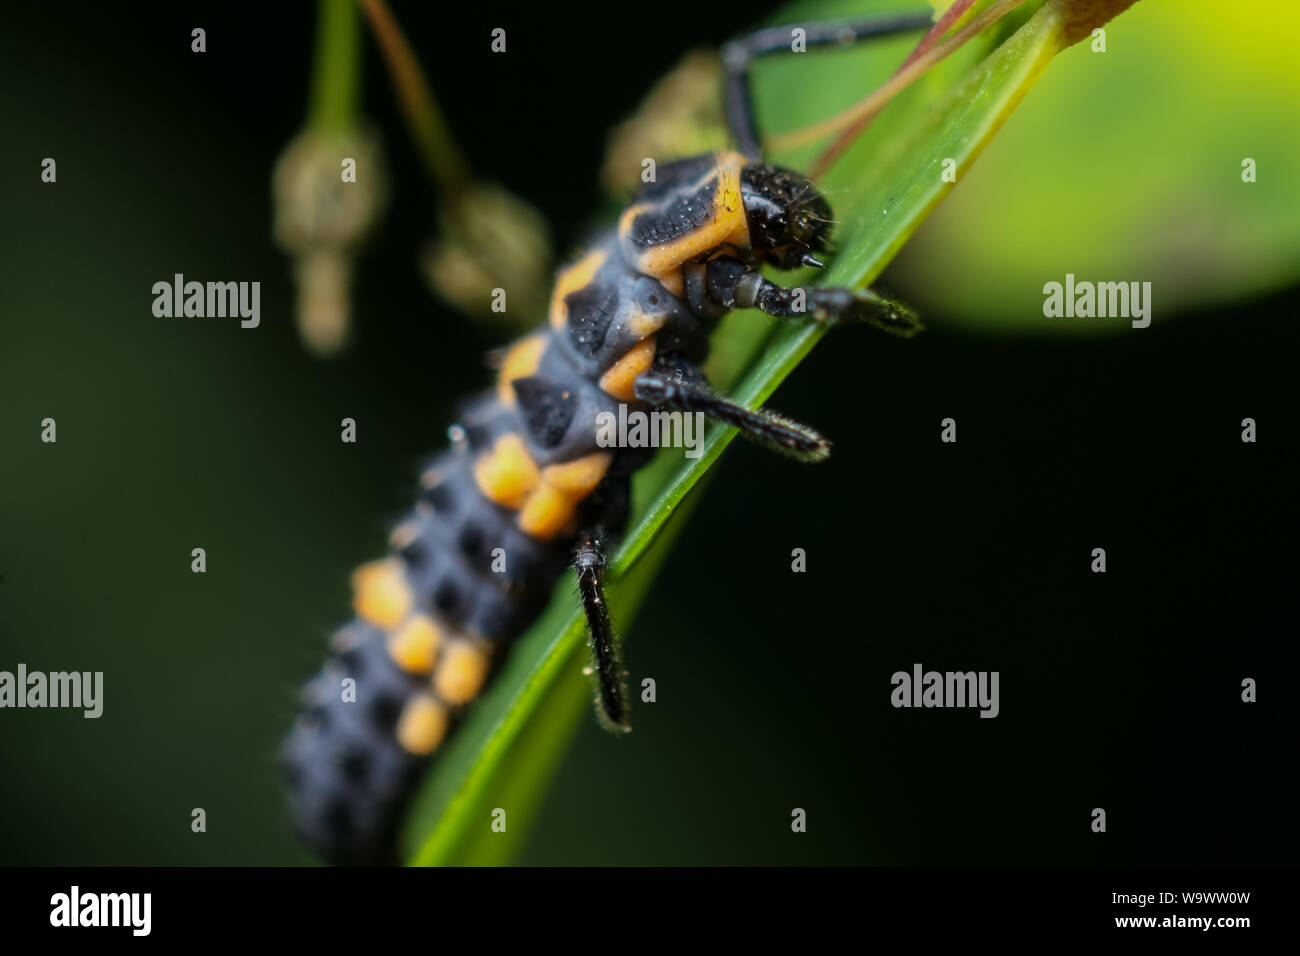 Detaillierte Makro einer Marienkäfer (lady Bug) Larve, bekannt Predator von Blattläusen, wie Schädlingsbekämpfung Stockfoto